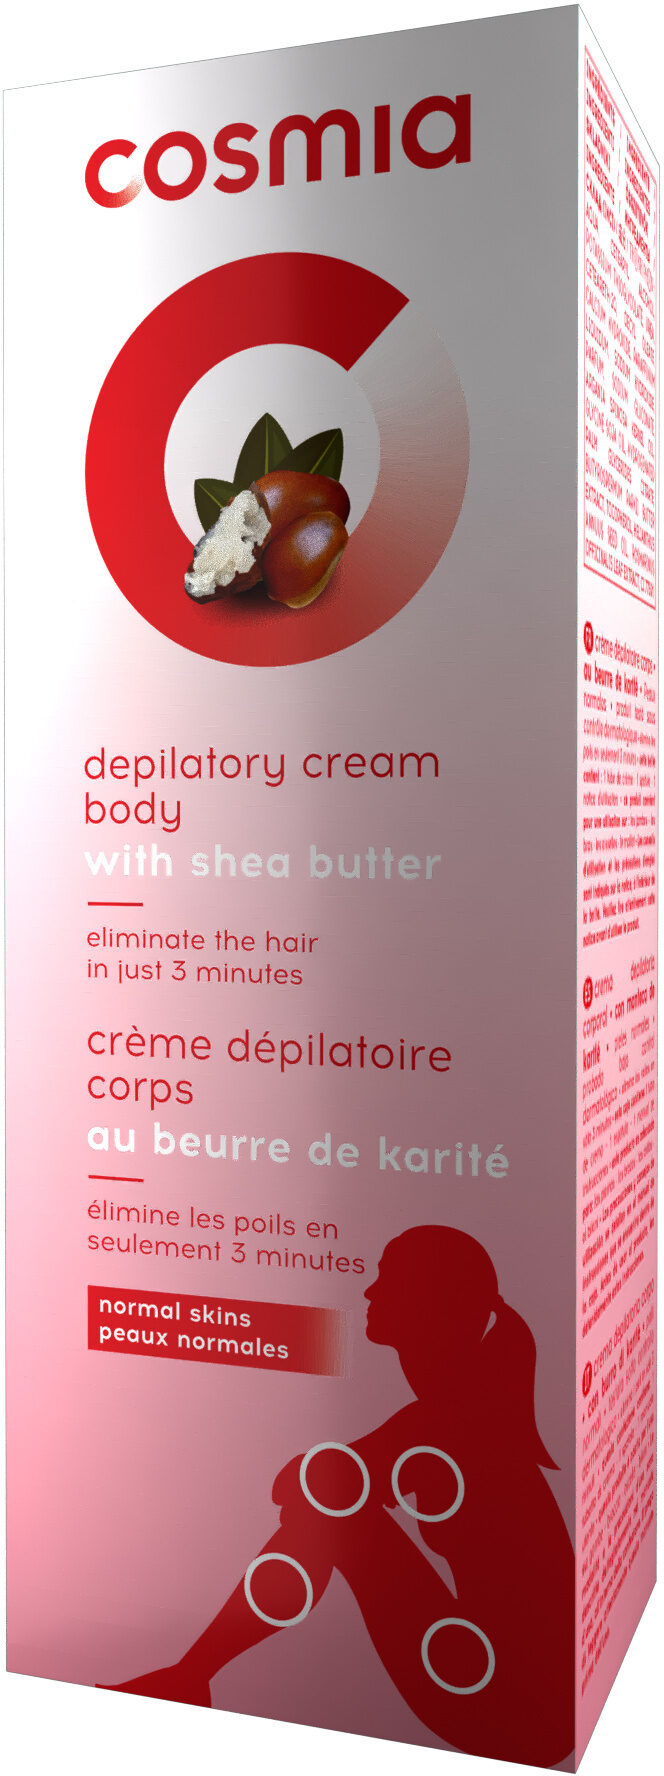 Crème dépilatoire corps au beurre de karité - Produkto - fr